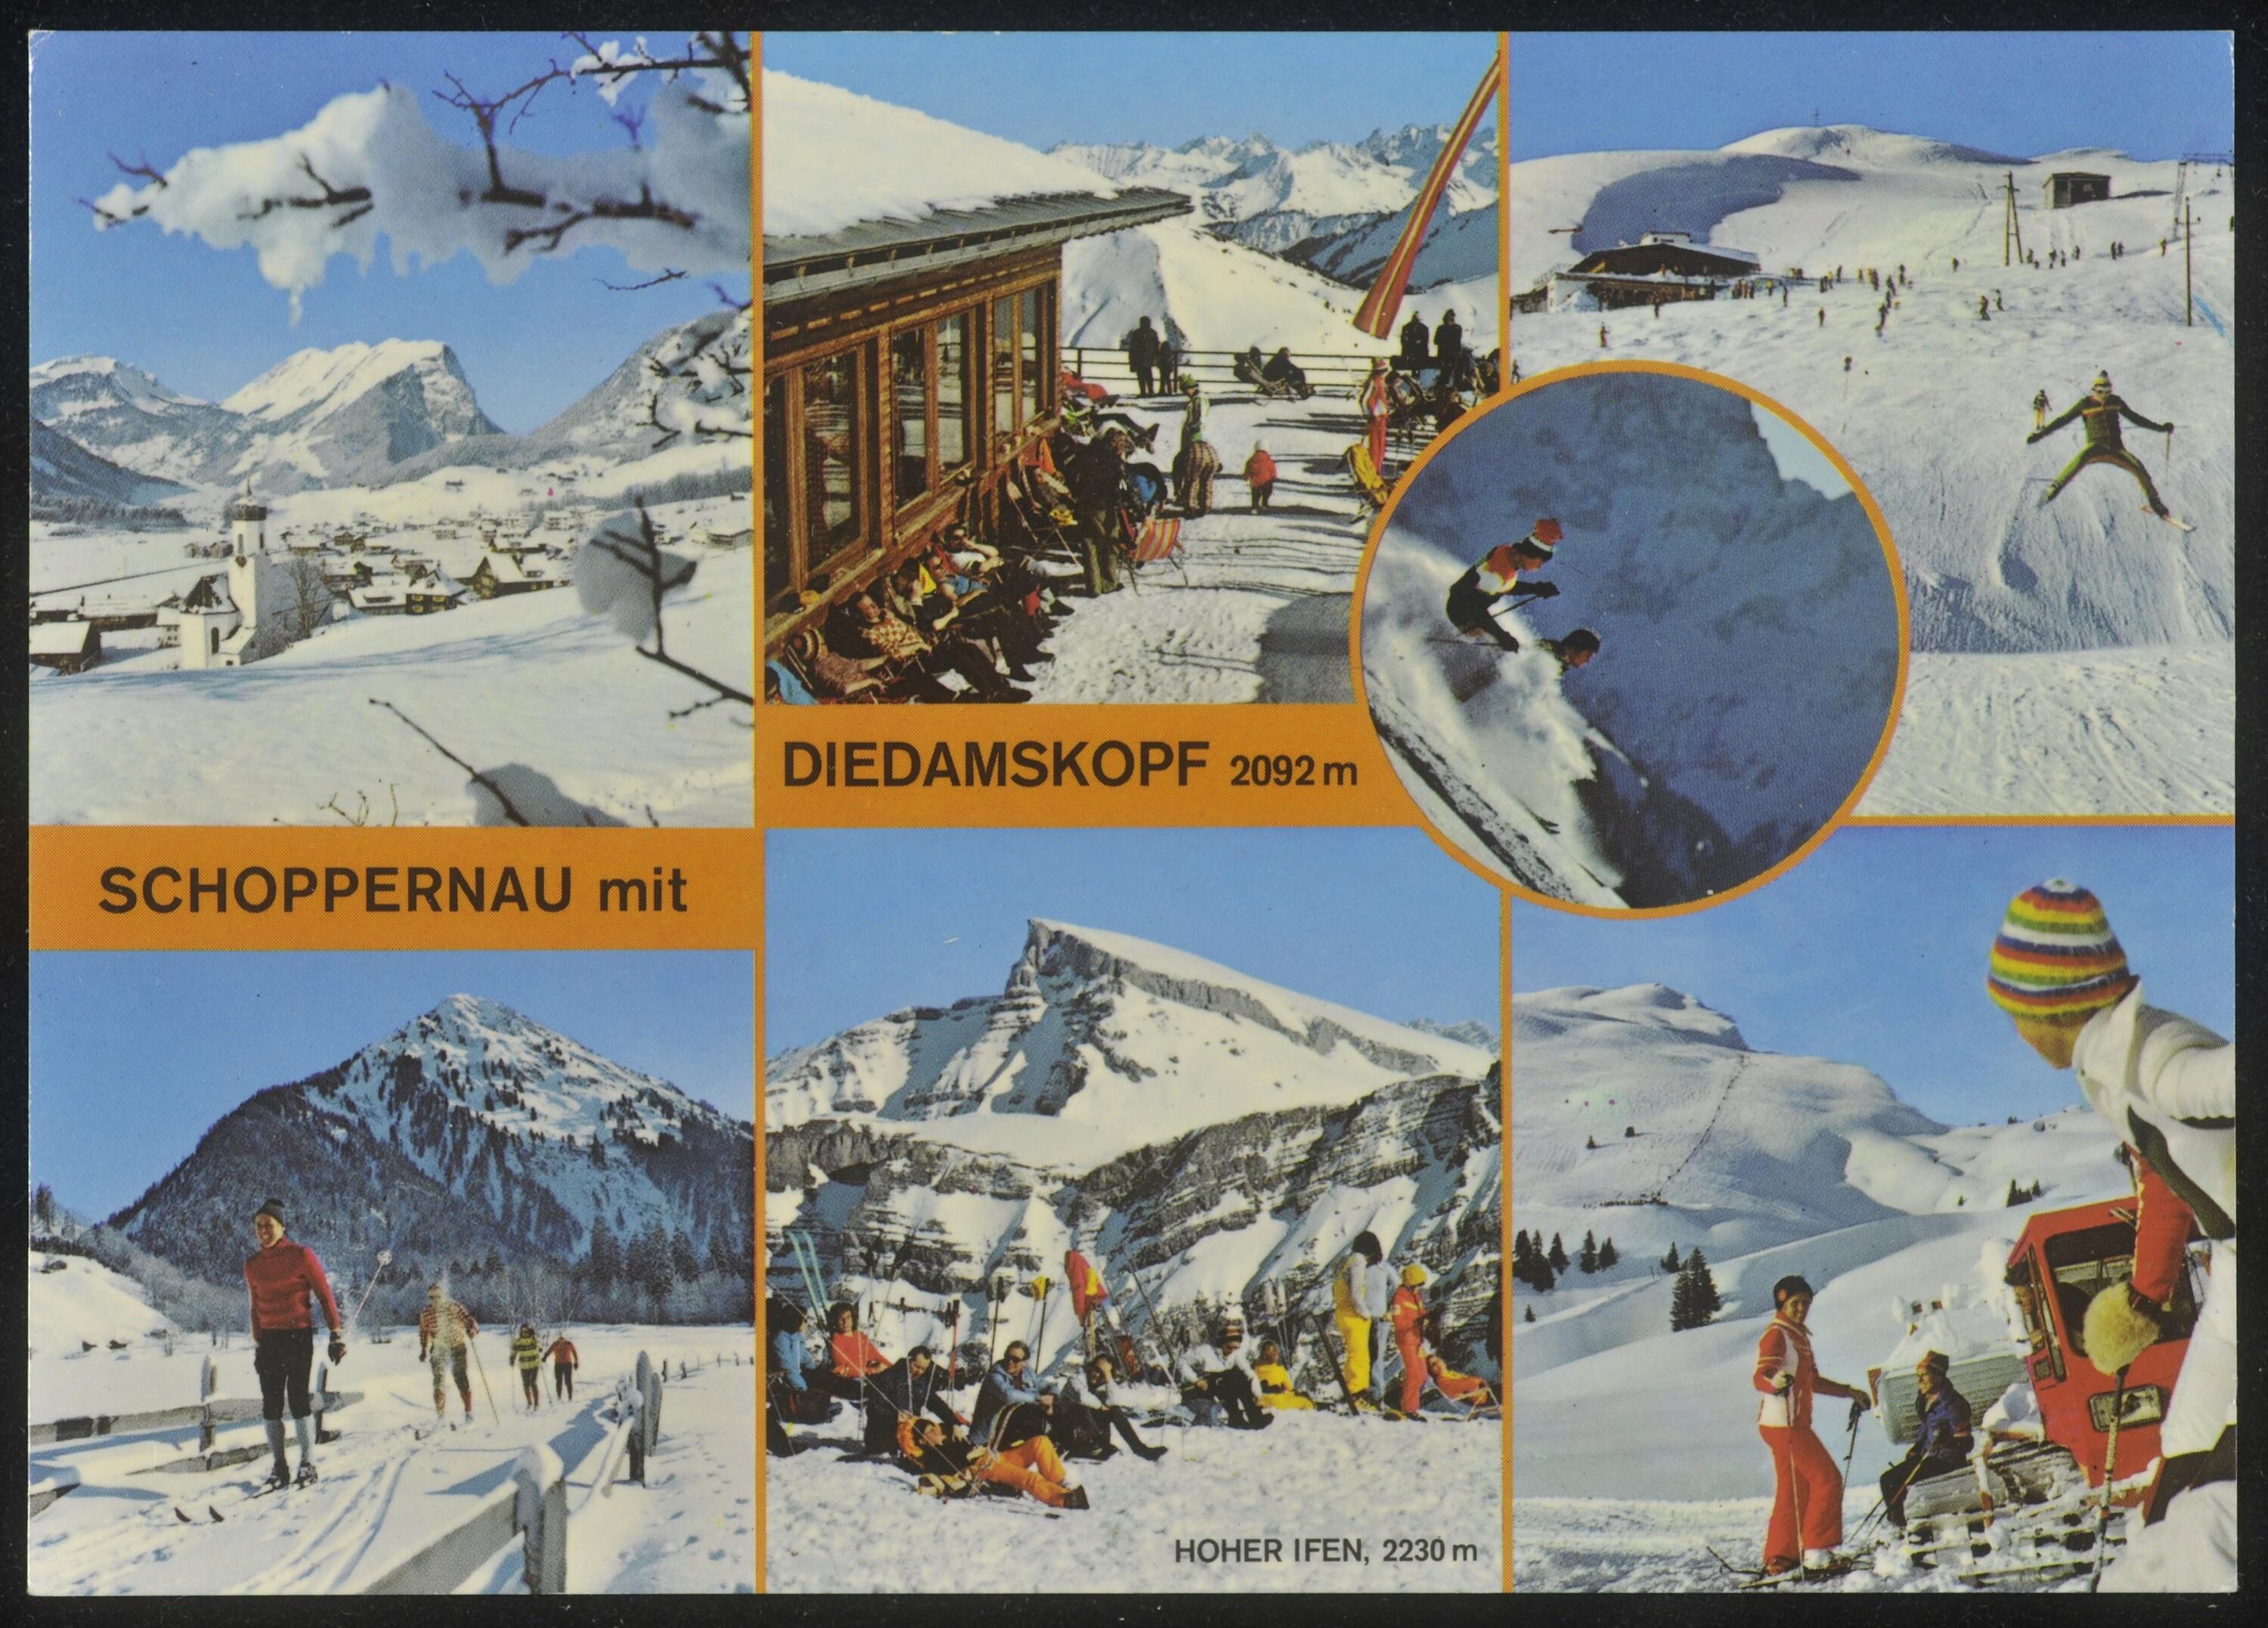 Schoppernau mit Diedamskopf 2092 m></div>


    <hr>
    <div class=